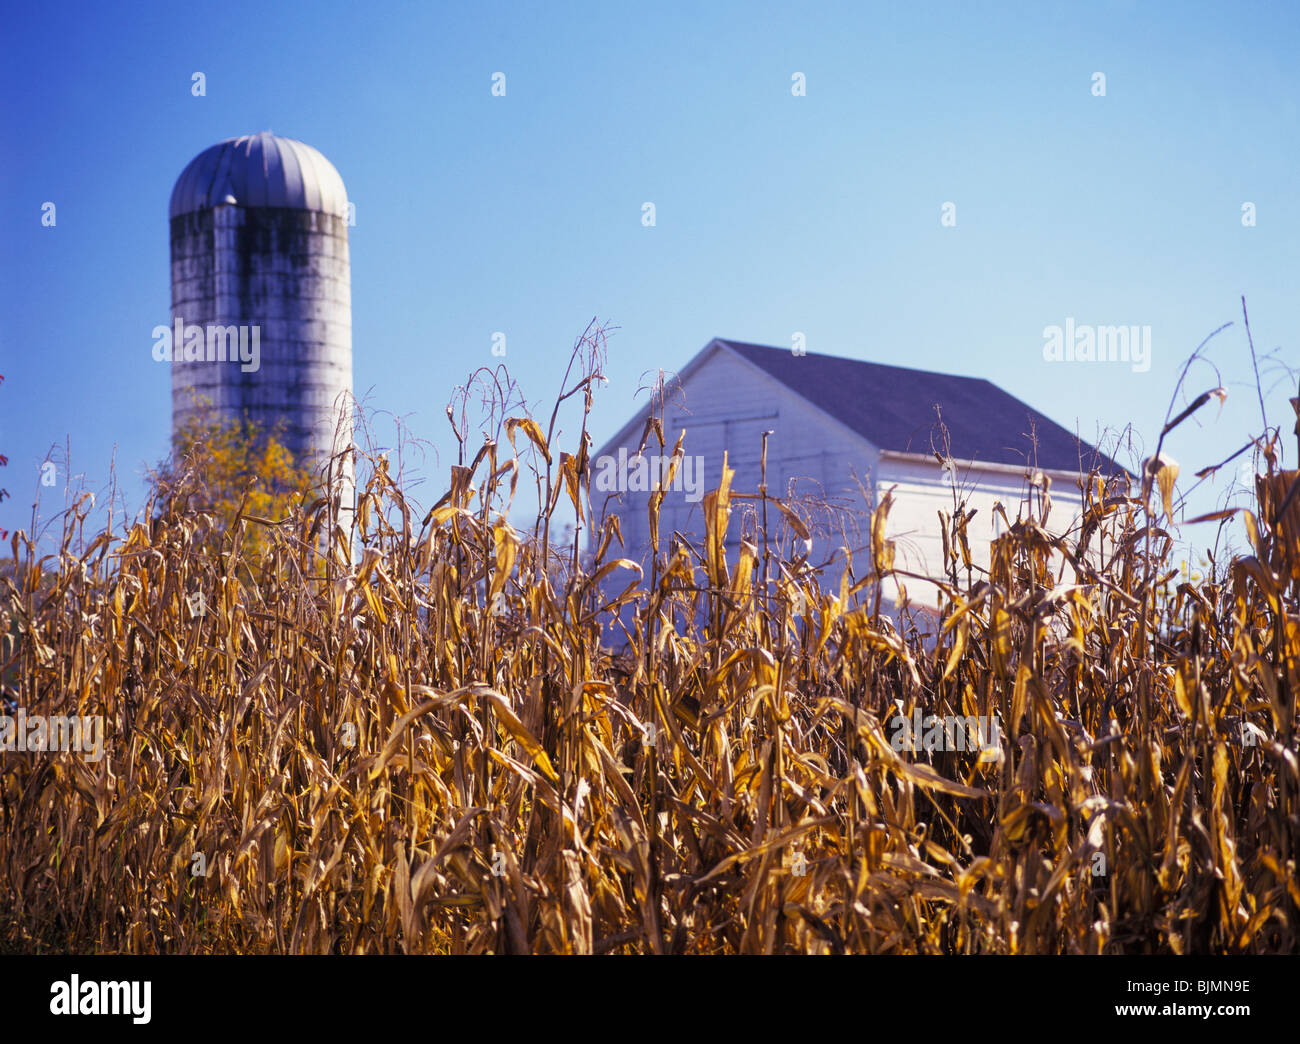 Les tiges de maïs récolté d'or, white barn et silo en arrière-plan, tôt le matin, à l'automne dans le comté de Lancaster, Pennsylvanie, USA Banque D'Images